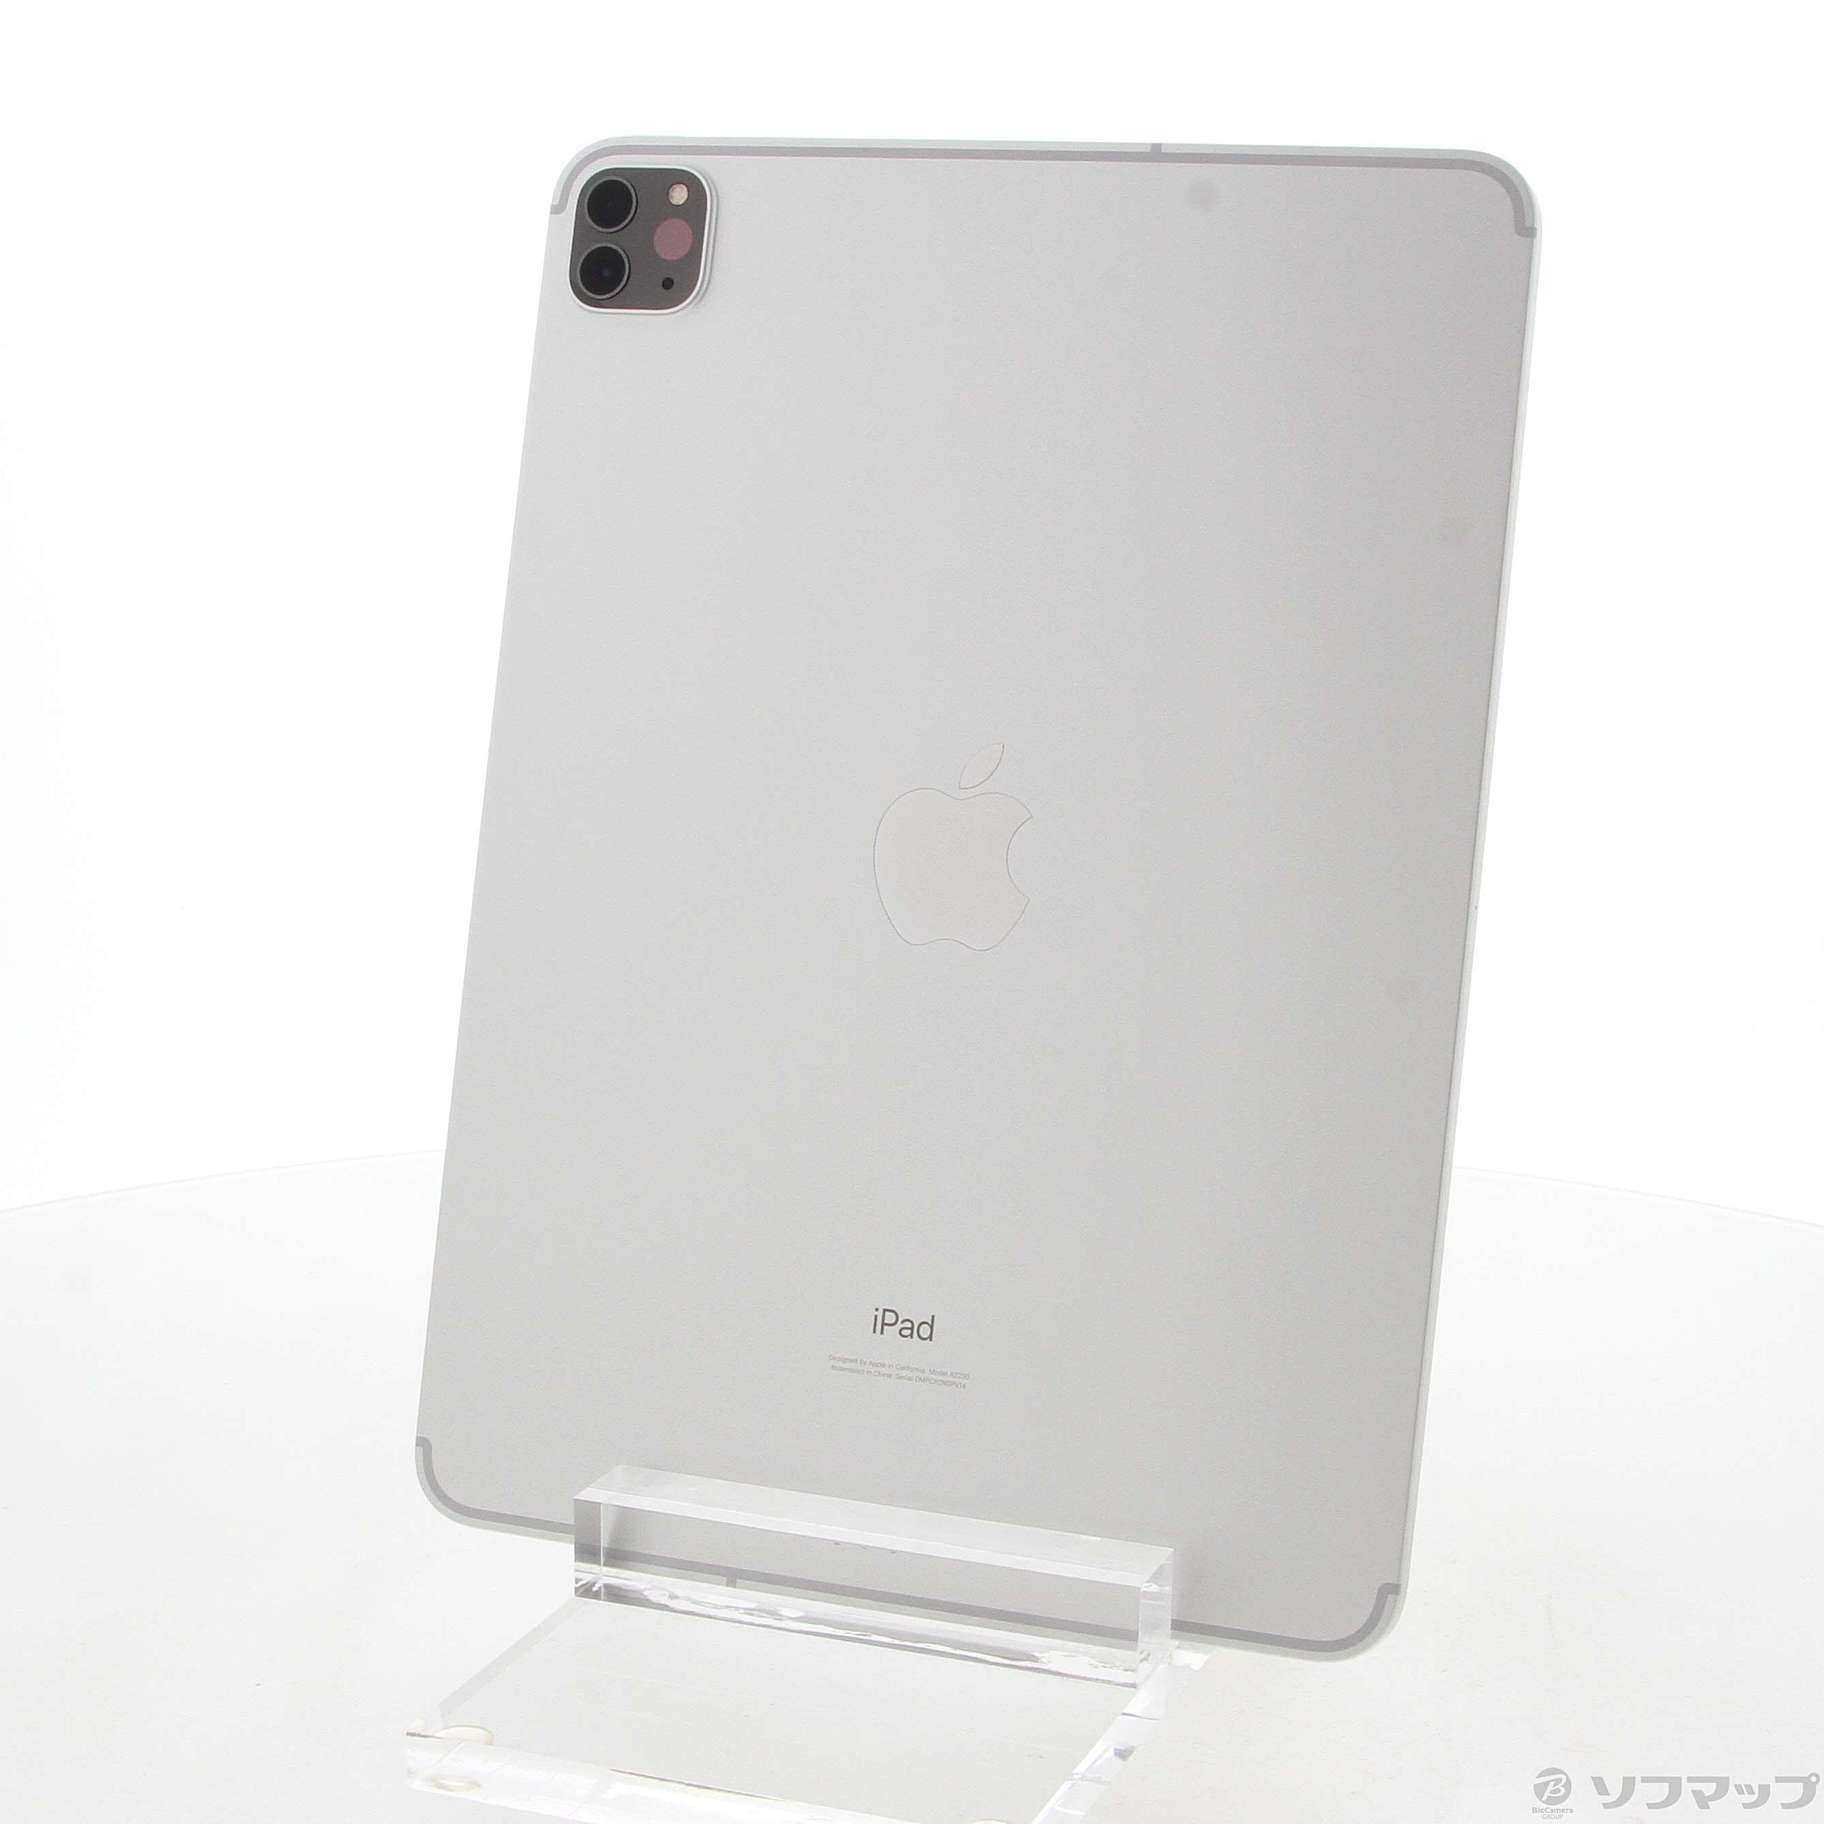 【保証未開始】Apple iPad Pro 11インチ MXDH2J/Aシルバー